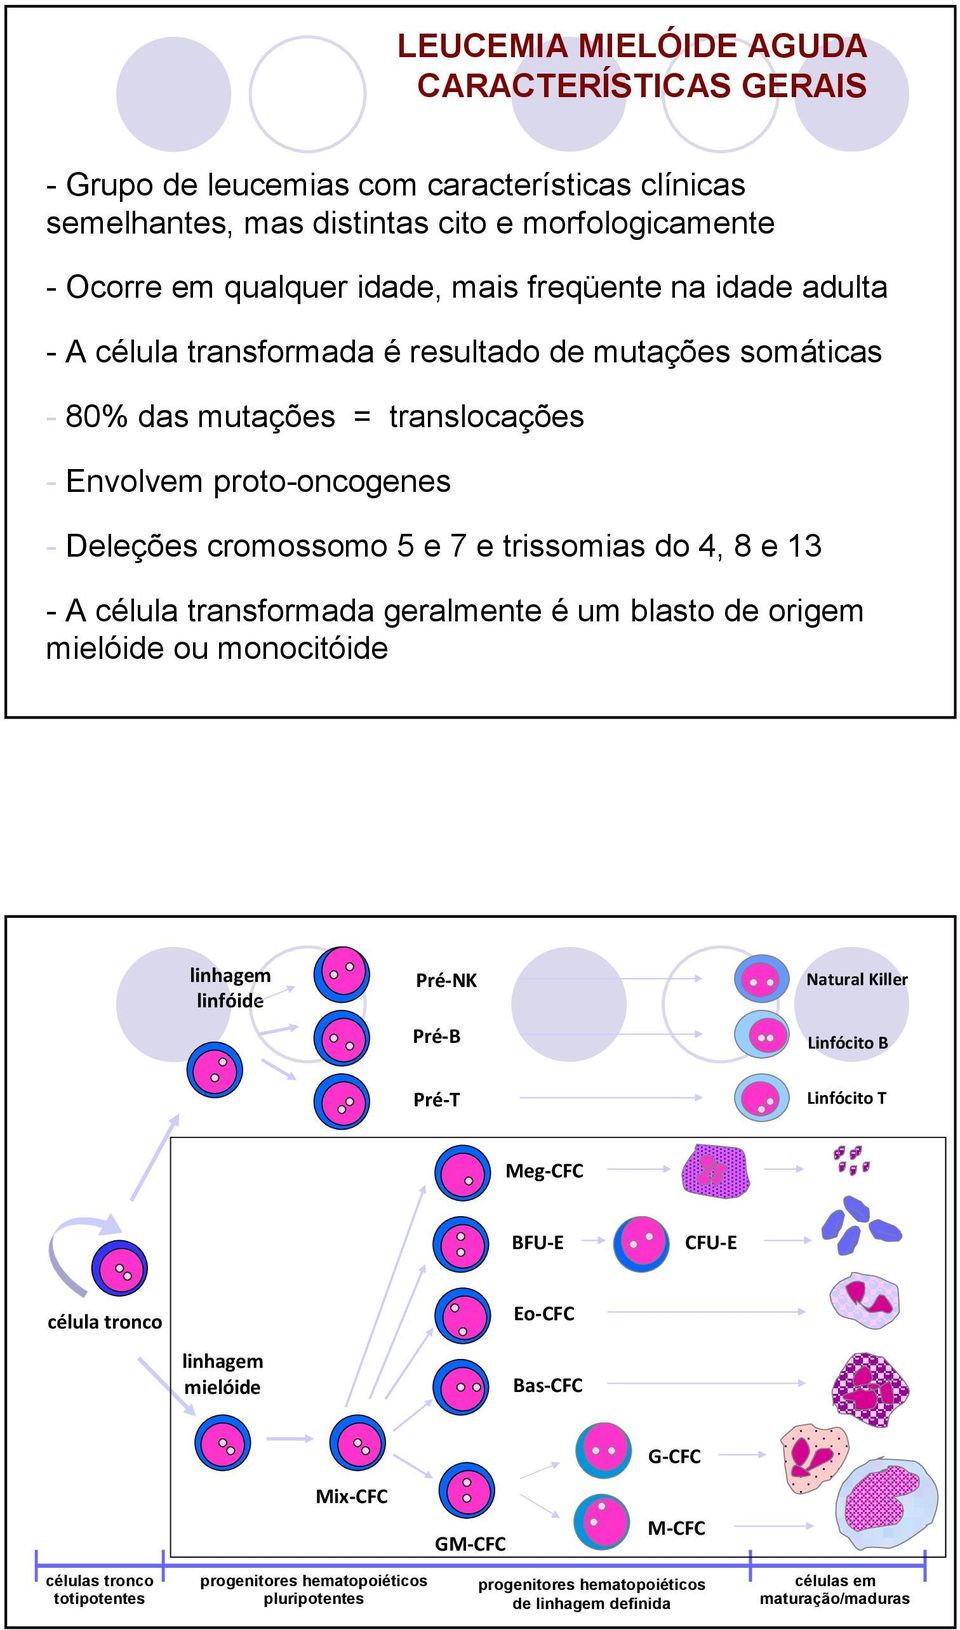 célula transformada geralmente é um blasto de origem mielóide ou monocitóide linhagem linfóide Pré-NK Pré-B Natural Killer Linfócito B Pré-T Linfócito T Meg-CFC BFU-E CFU-E célula tronco Eo-CFC